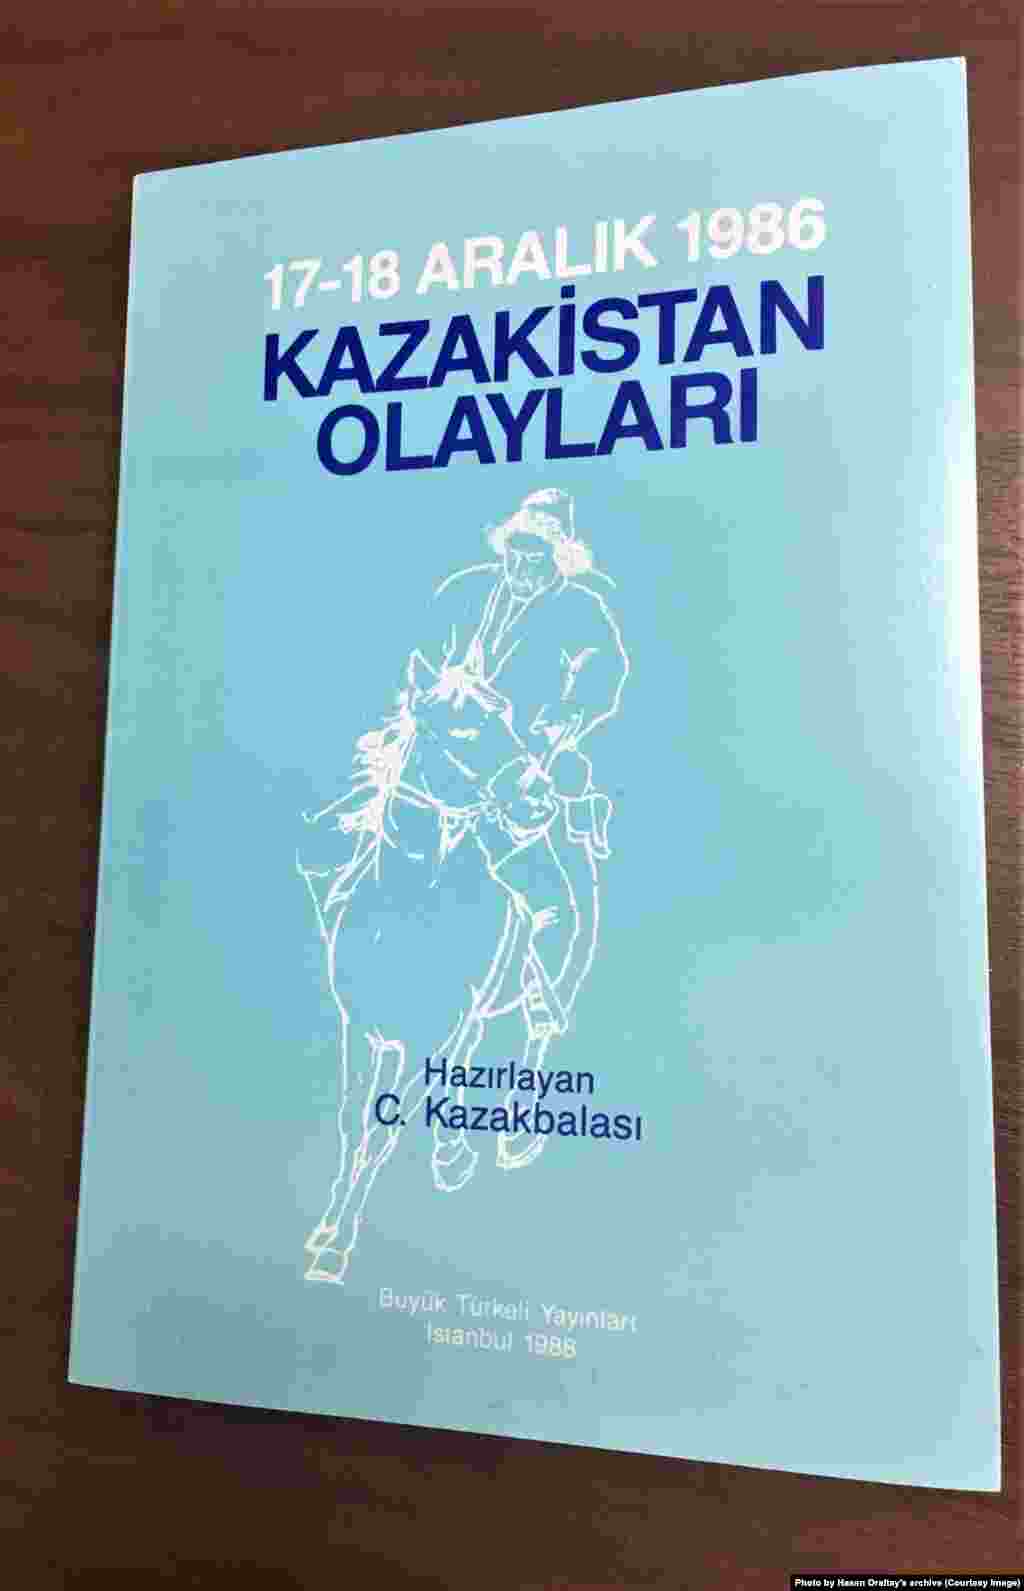 Хасен Оралтайдың &quot;С.Қазақбаласы&quot; атымен түрік тілінде құрастырып, 1988 жылы Ыстамбұлда шығарған &quot;17-18 желтоқсан 1986. Қазақстан оқиғалары&quot; кітабының мұқабасы